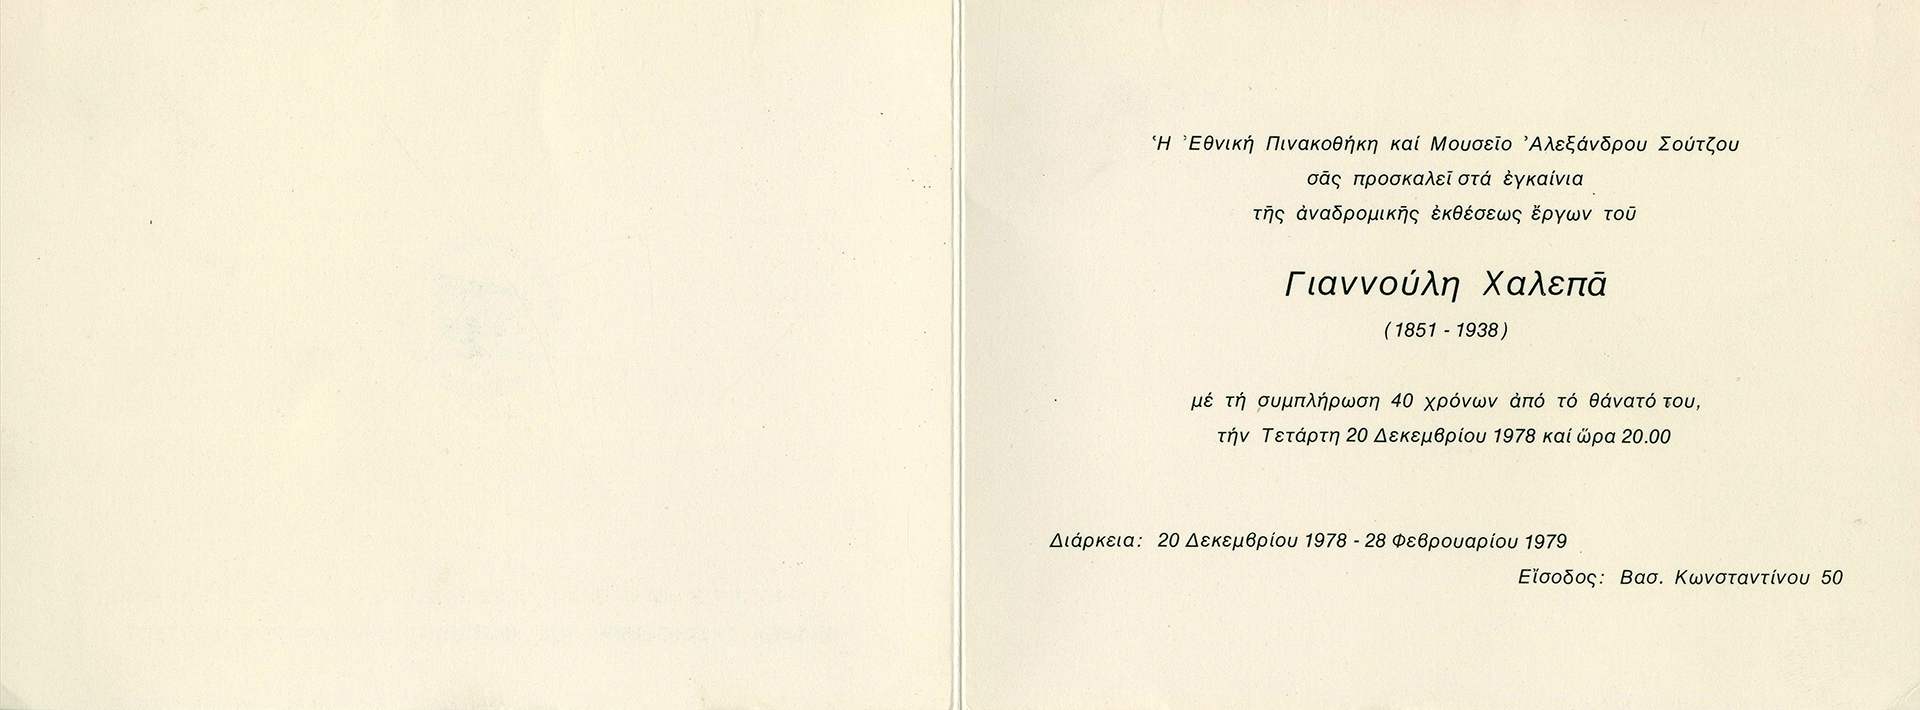 Η πρόσκληση εγκαινίων της αναδρομικής έκθεσης έργων του Γιαννούλη Χαλεπά, που οργανώθηκε στην Εθνική Πινακοθήκη το 1978 με αφορμή τη συμπλήρωση 40 χρόνων από τον θάνατό του